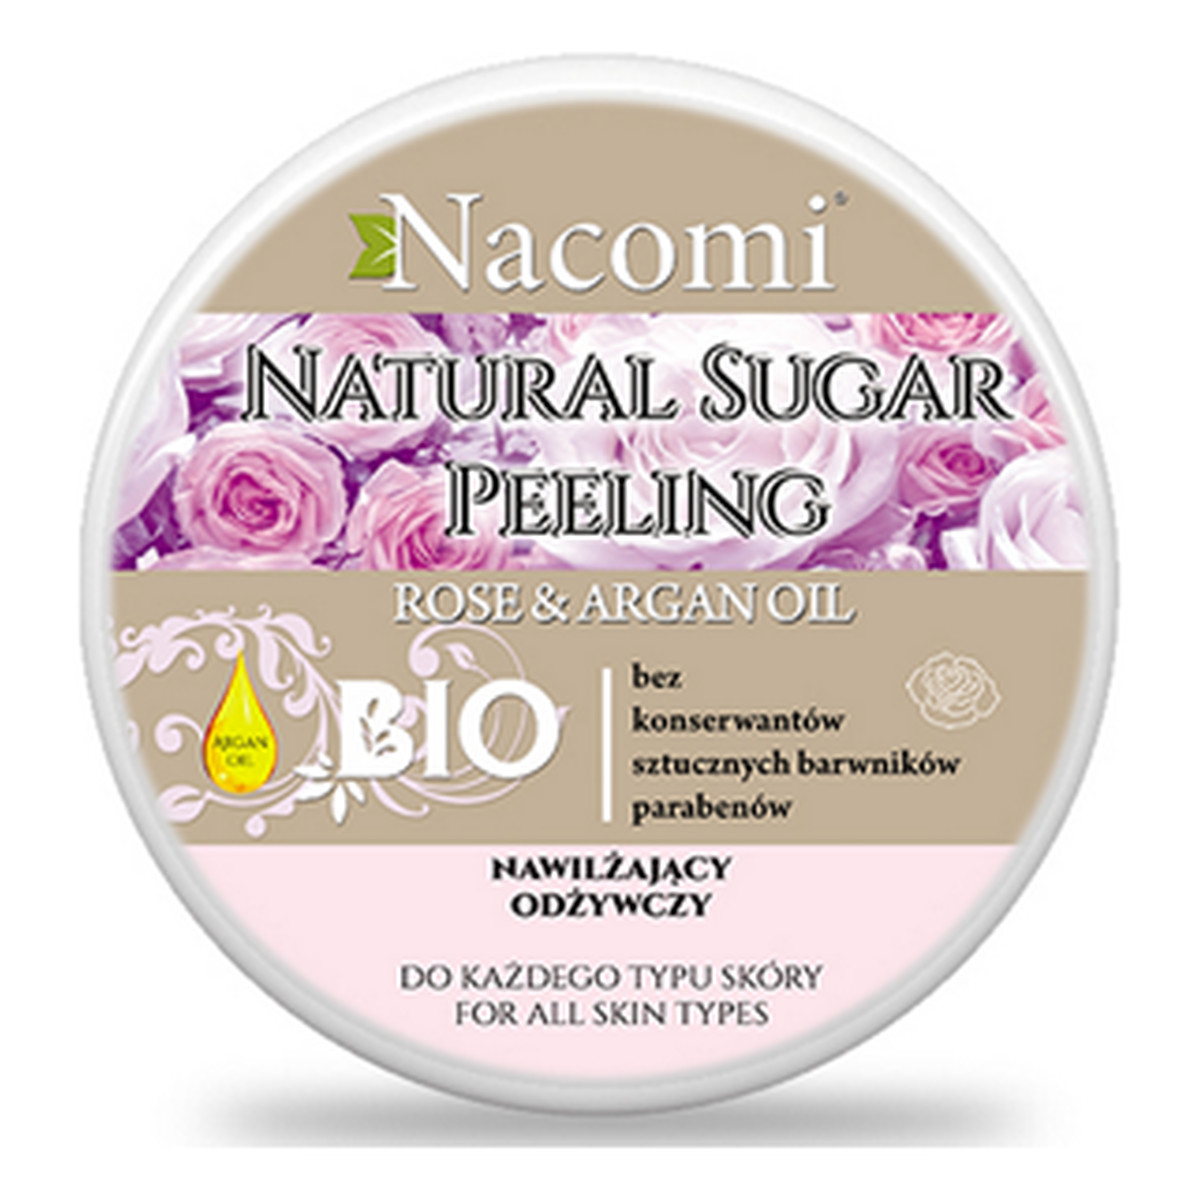 Nacomi Rose & Argan Oil Natural Sugar Peeling Peeling Cukrowy Róża Olej Arganowy Nawilża Odżywia Do każdegp typu skóry 100ml